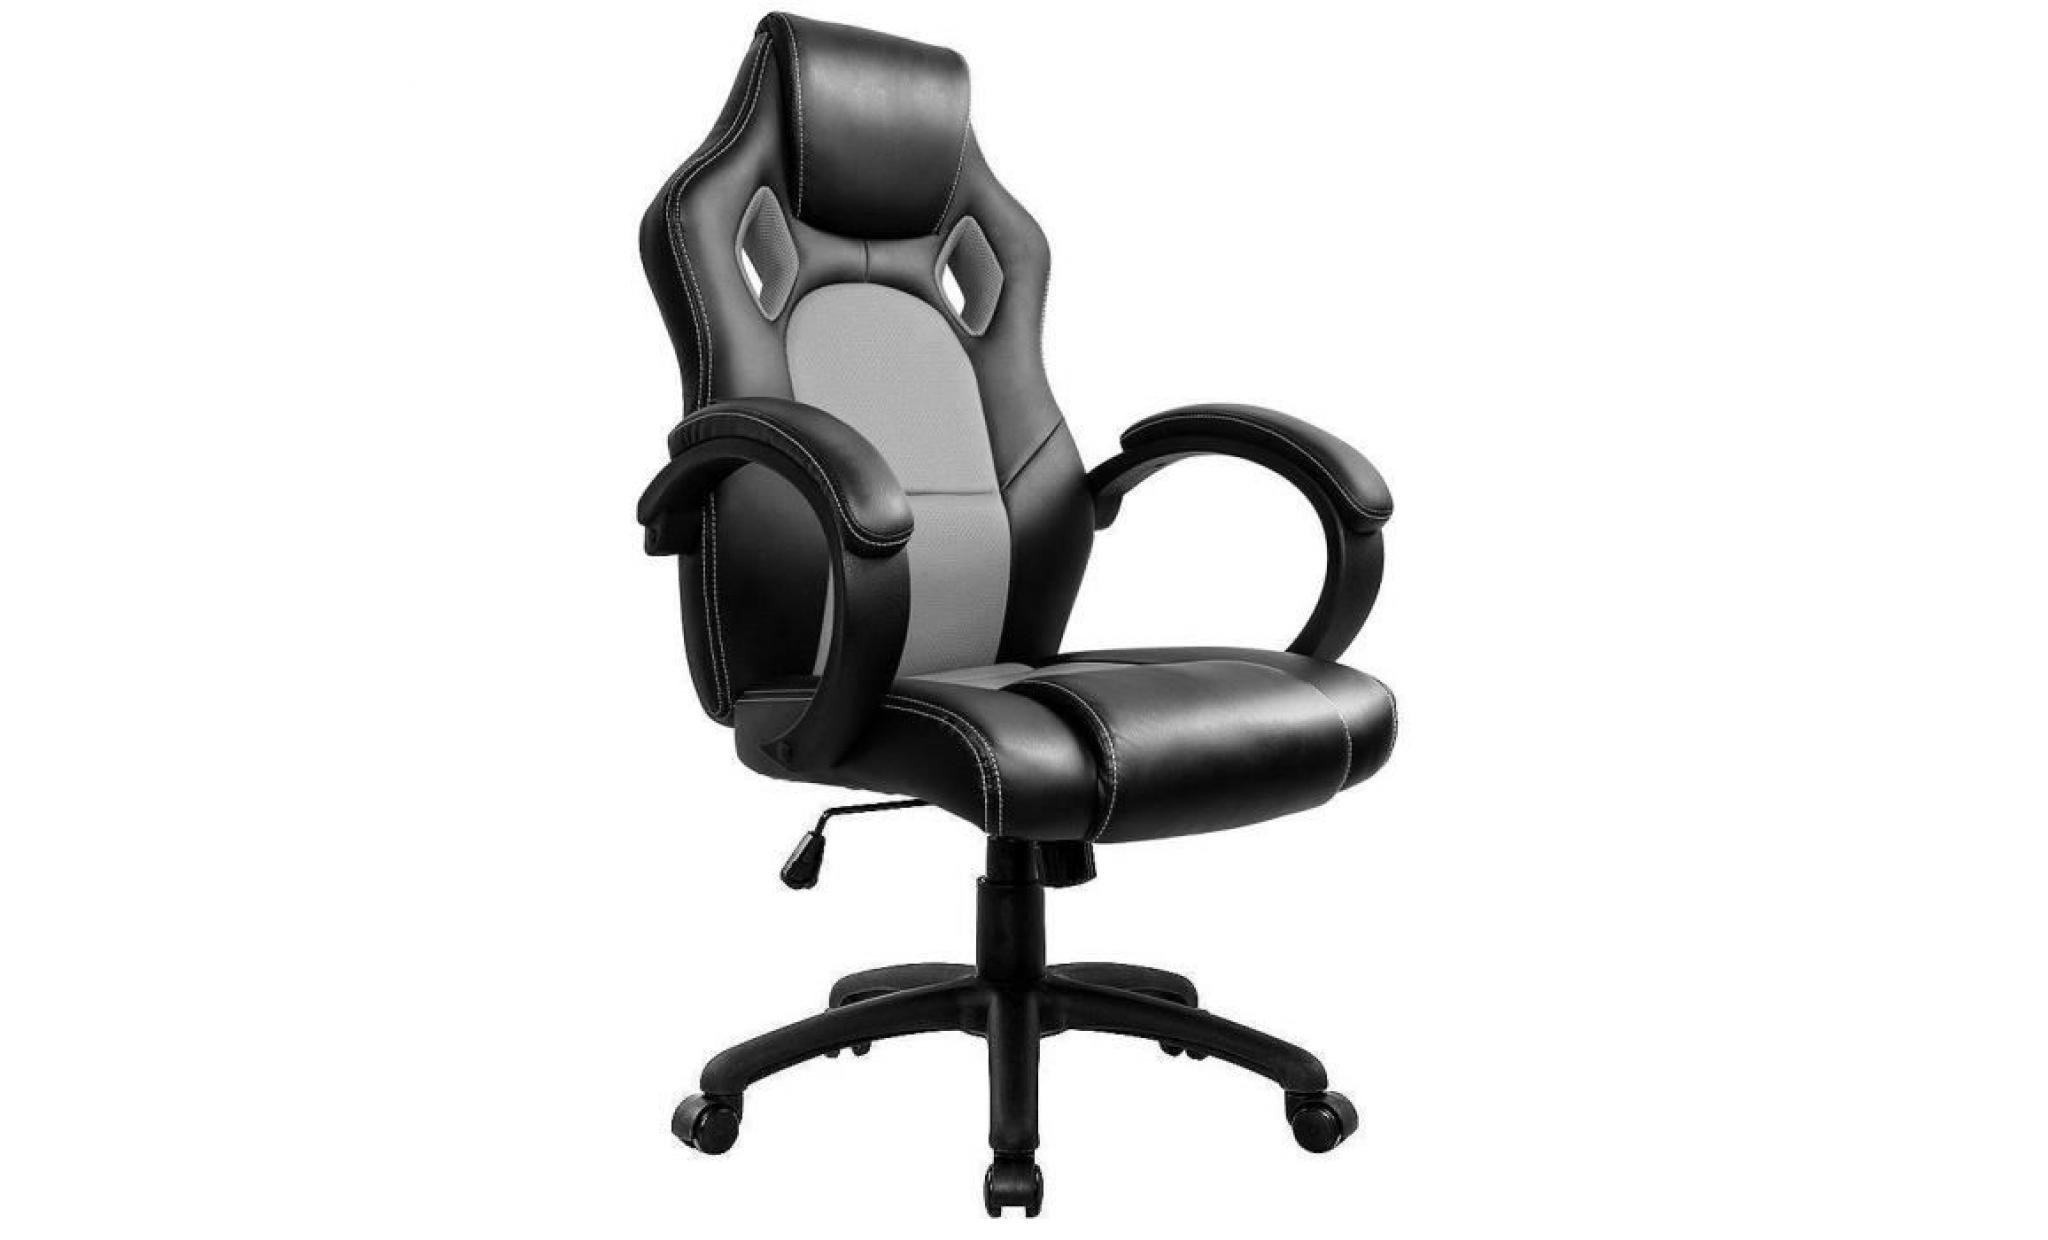 fauteuil de bureau gaming chaise   moderne confortable ergonomique en similicuir pu   hauteur réglable   noir   intimate wm heart